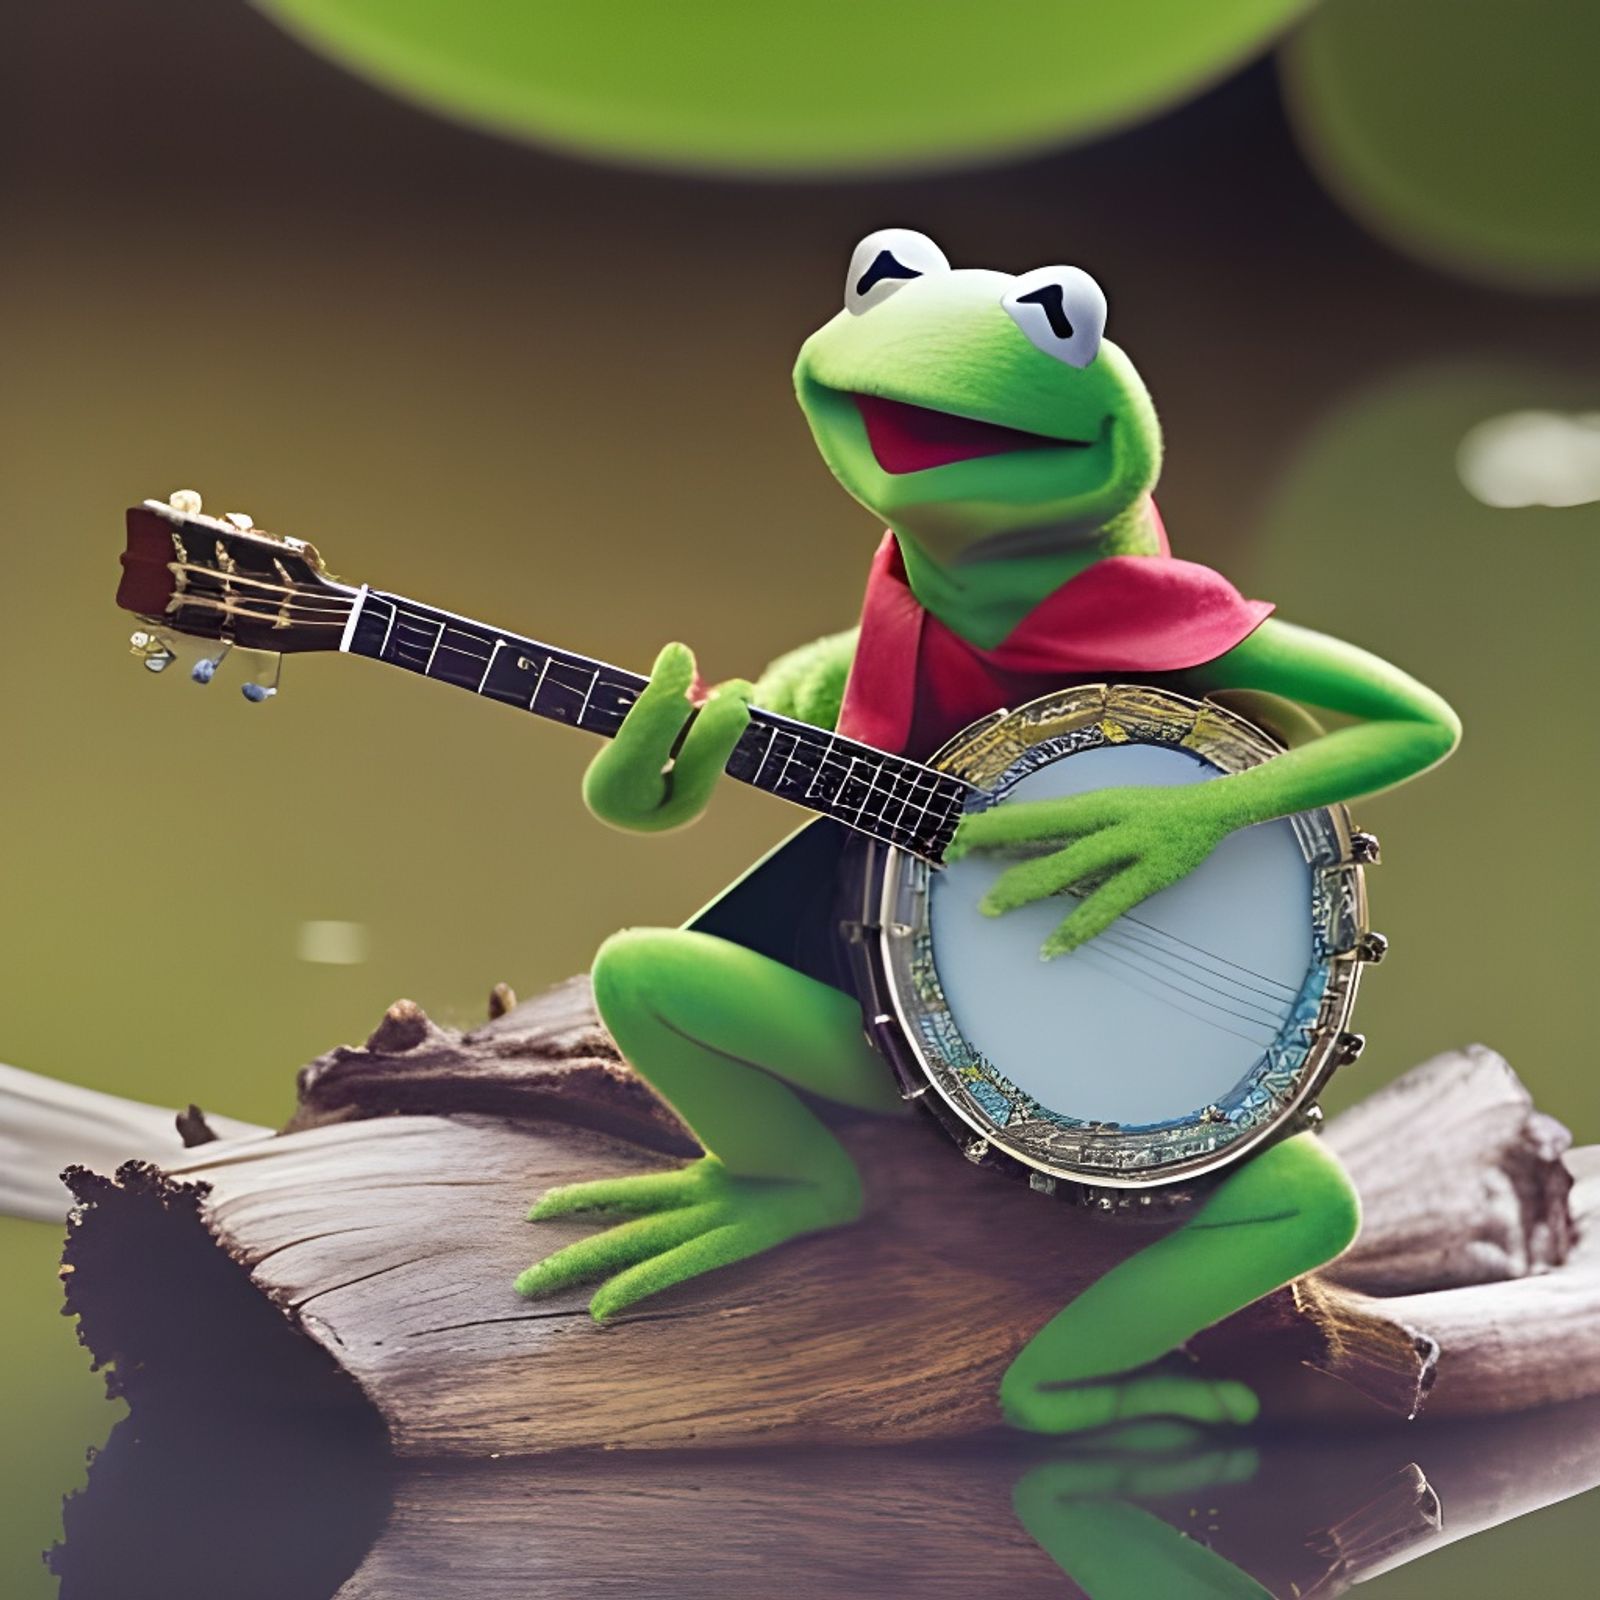 kermit playing banjo